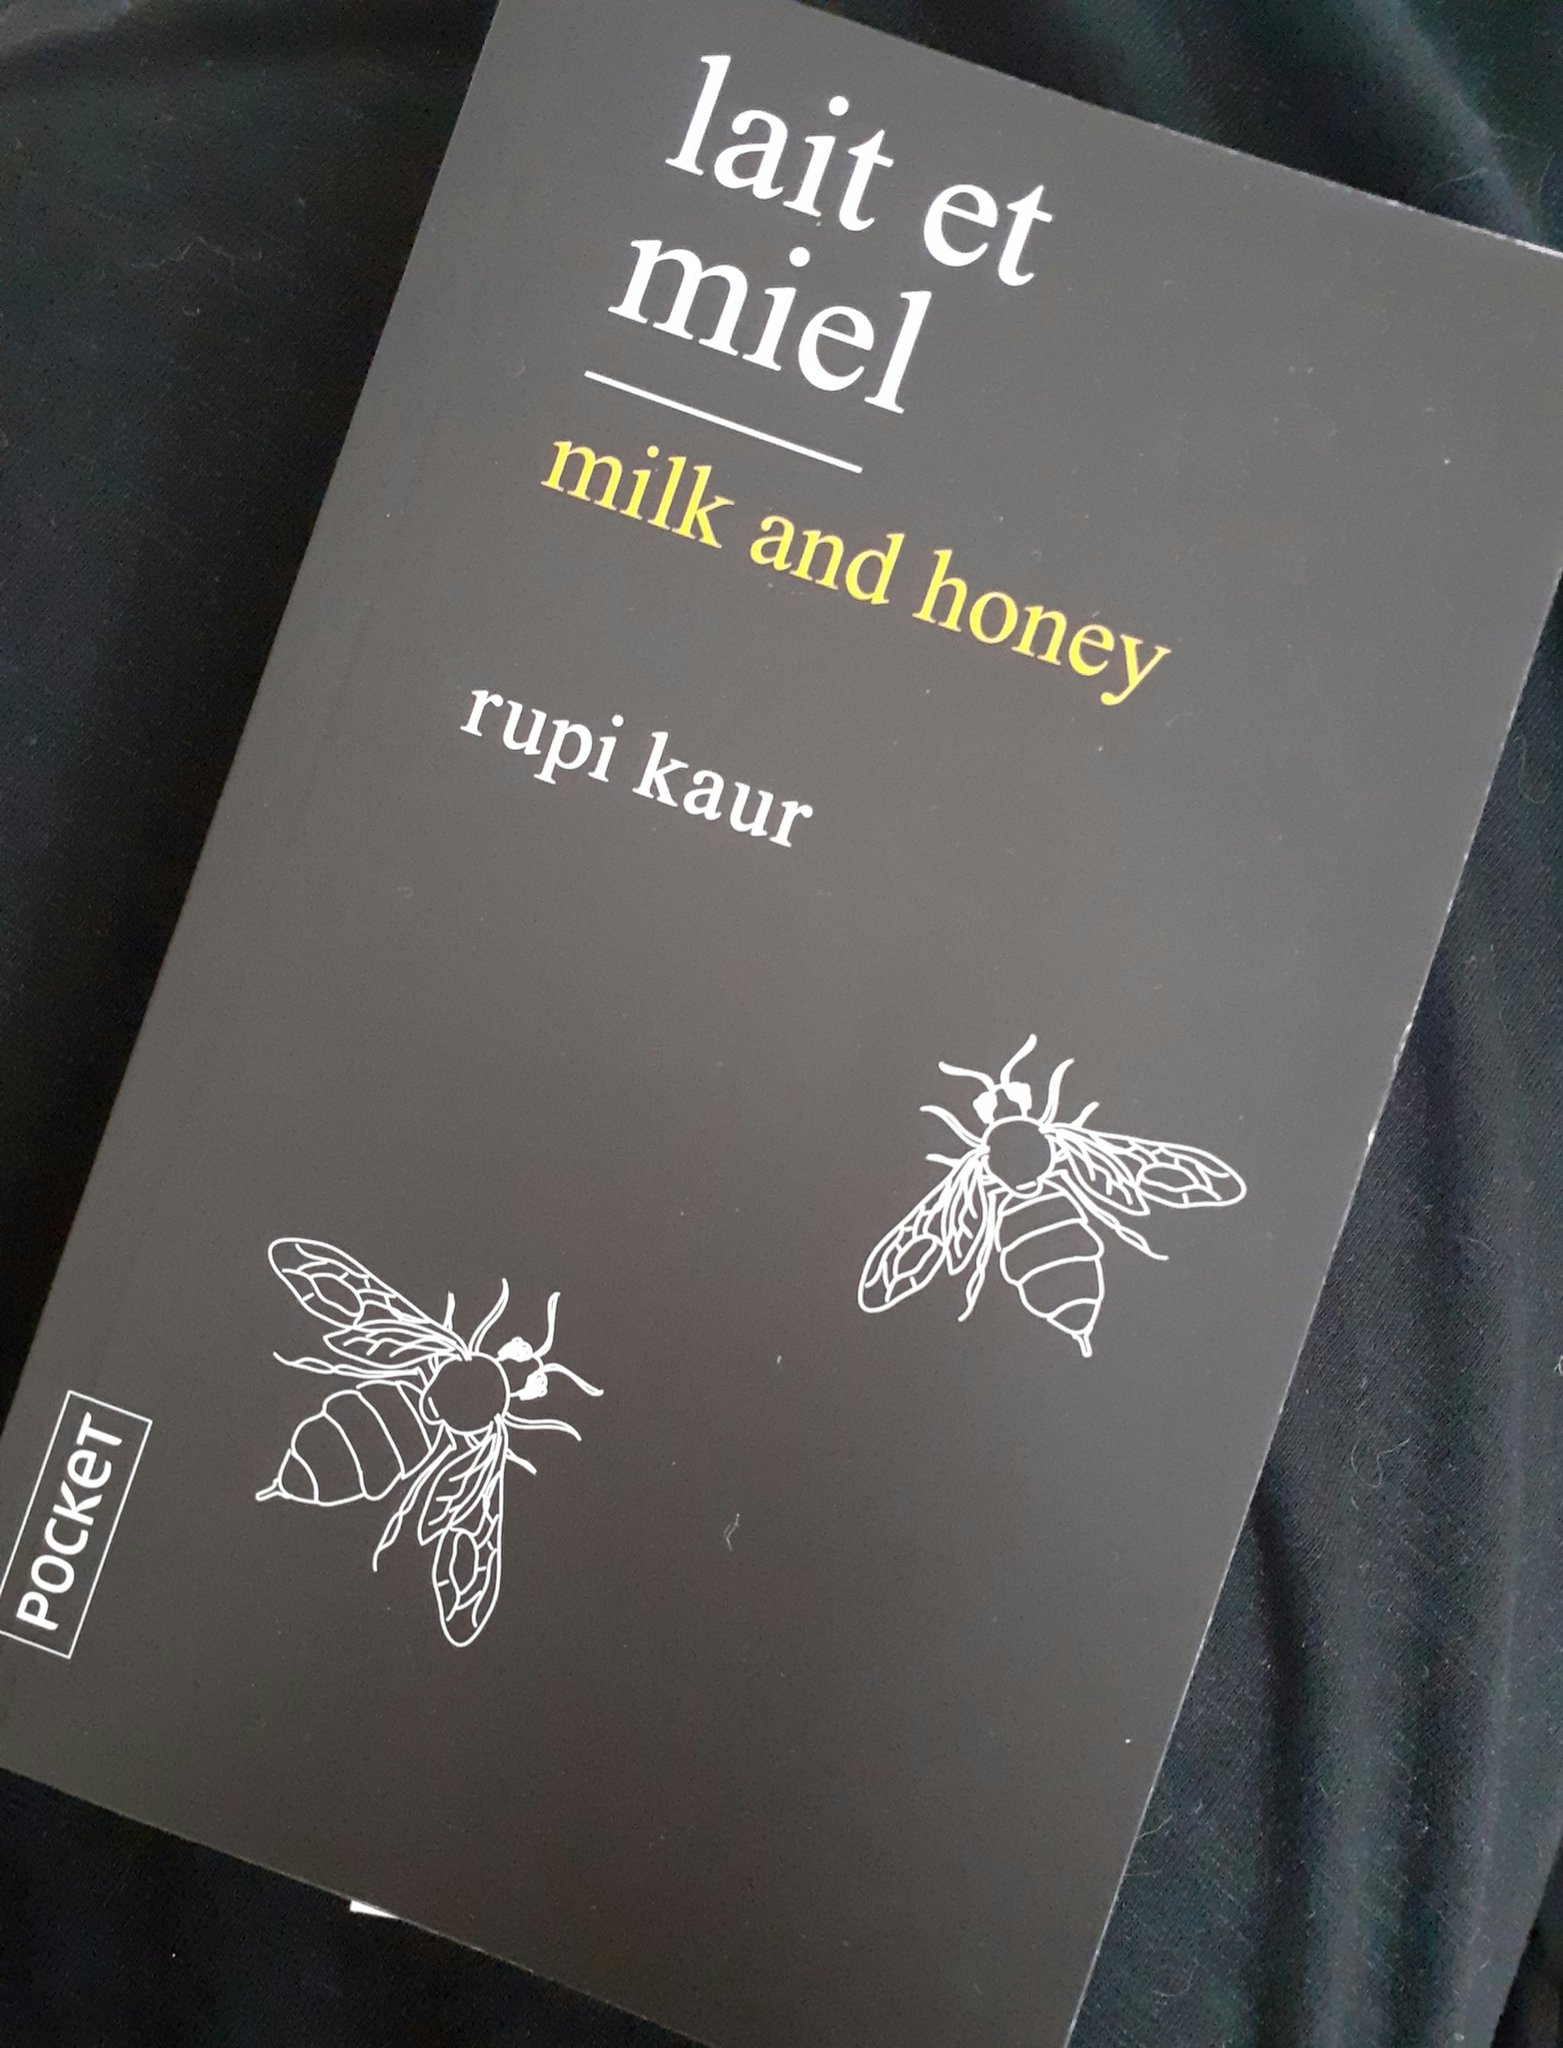  Lait et miel - Milk and honey - Rupi Kaur - poésie